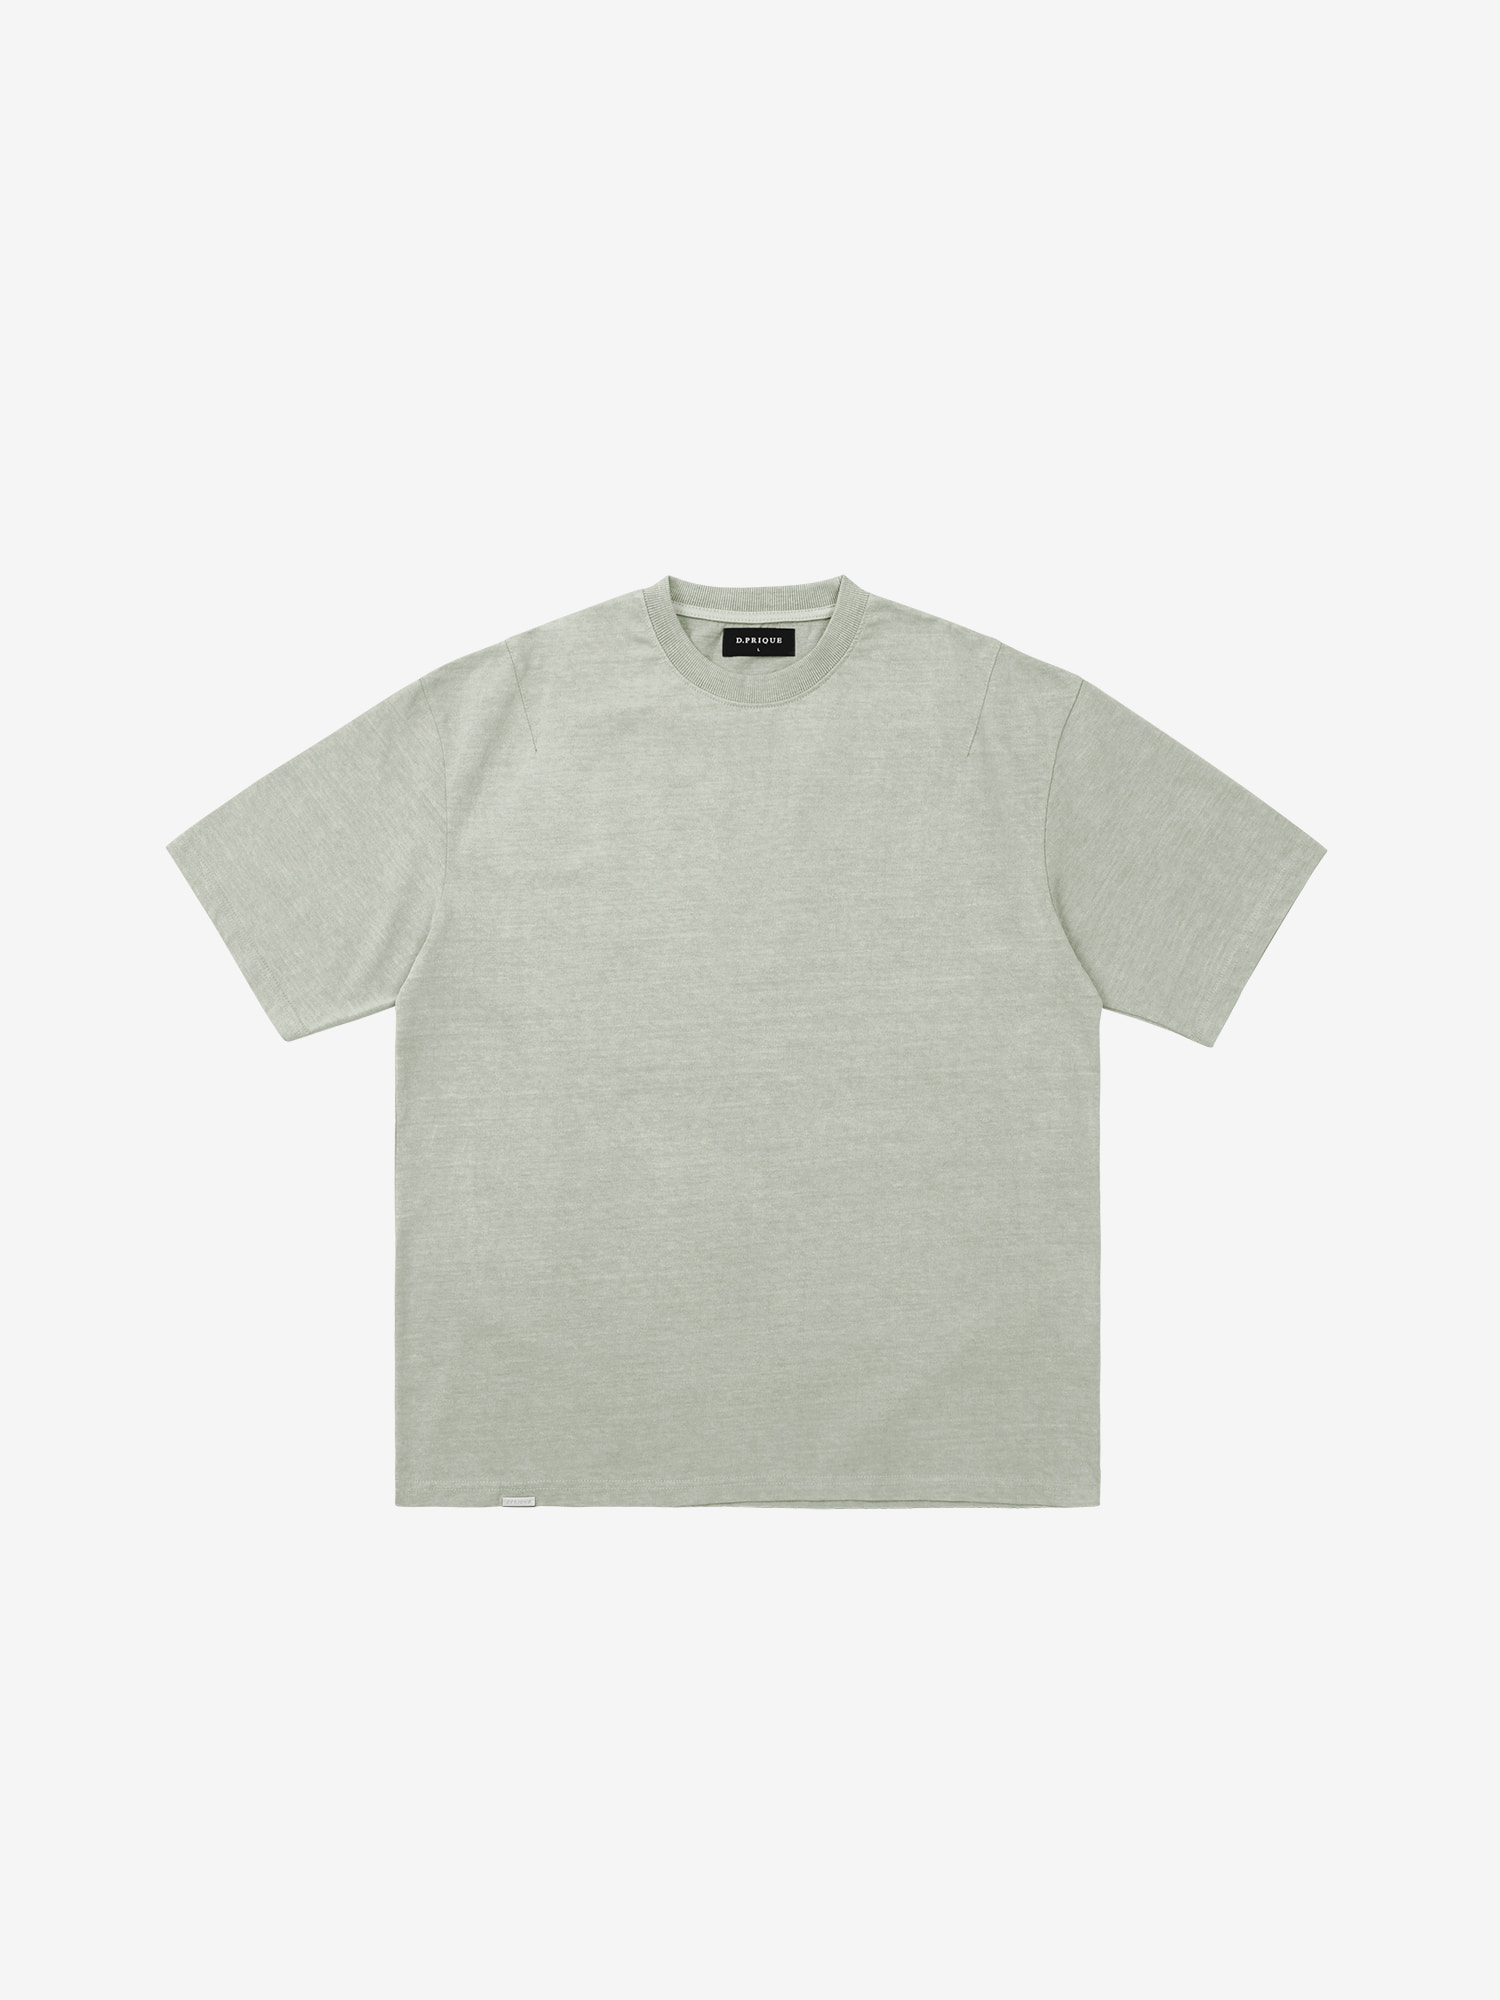 Classic Cotton T-Shirt - Sage